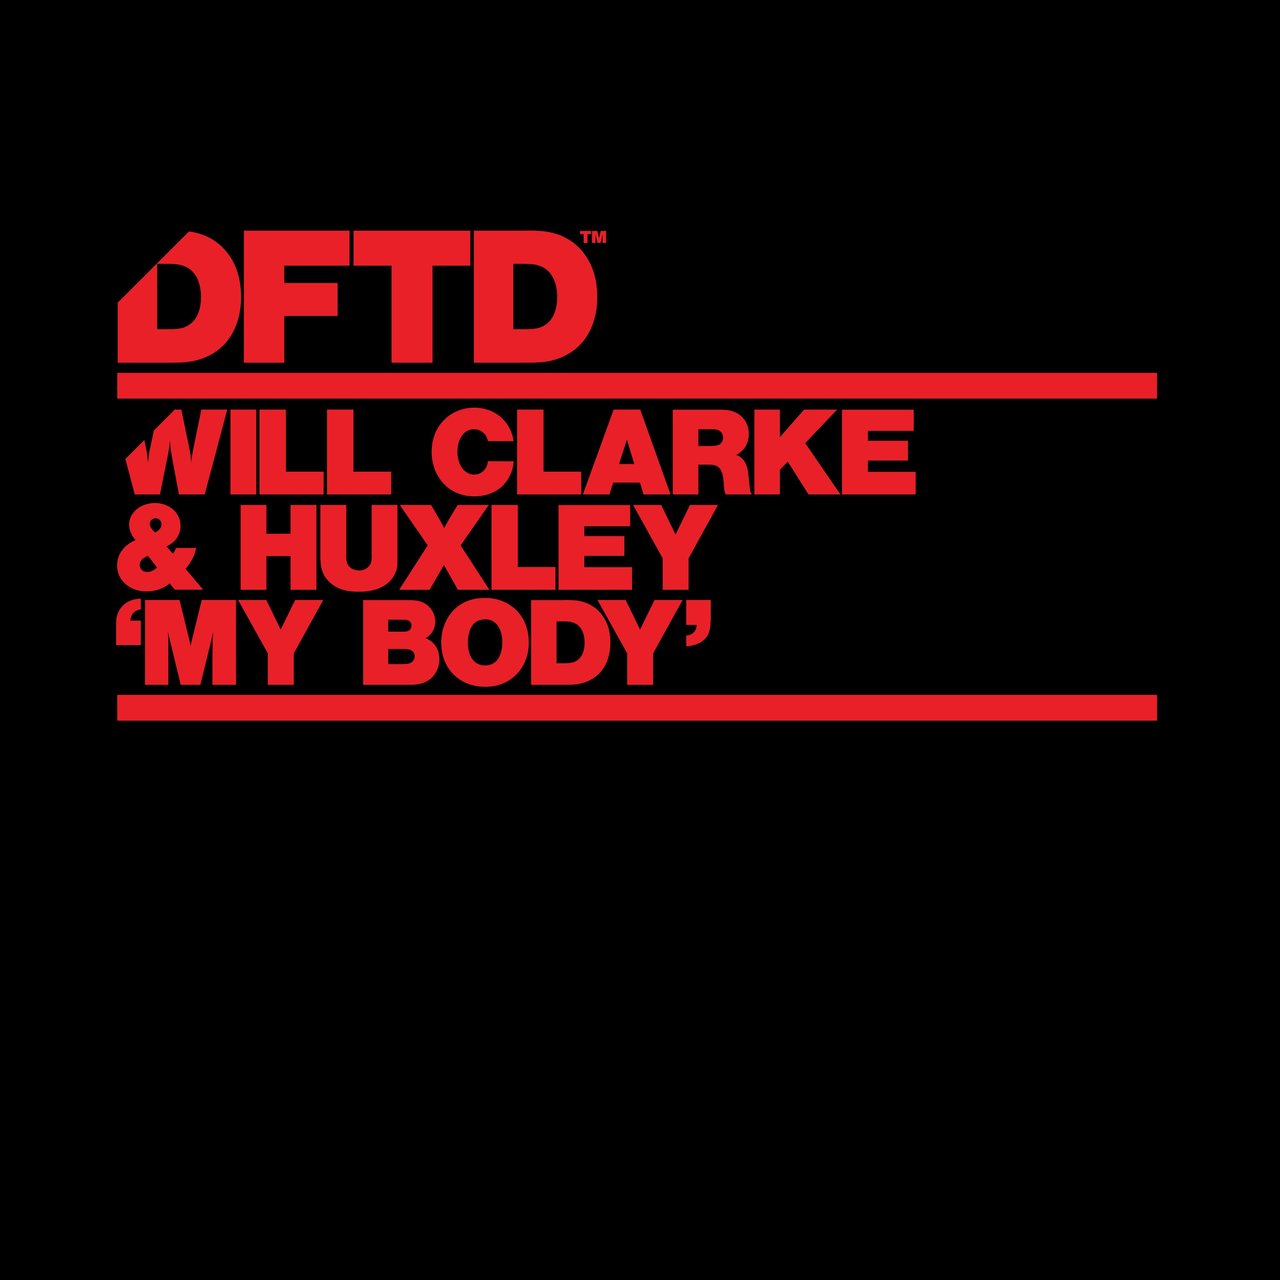 Will Clarke & Huxley - My Body / DFTD